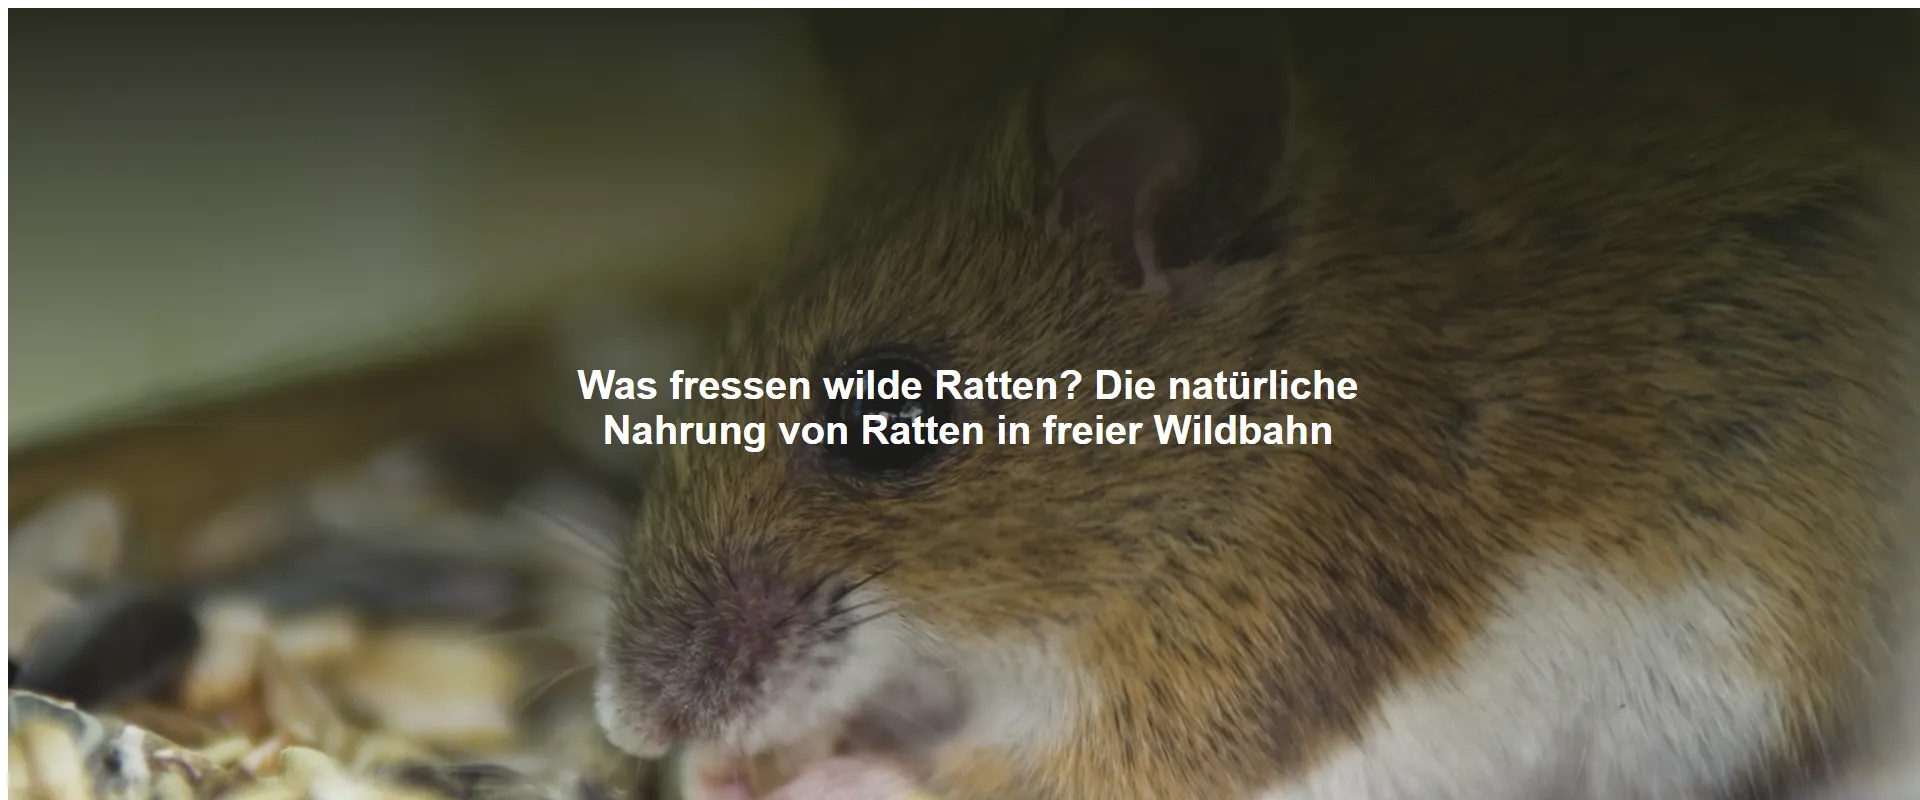 Was fressen wilde Ratten? Die natürliche Nahrung von Ratten in freier Wildbahn